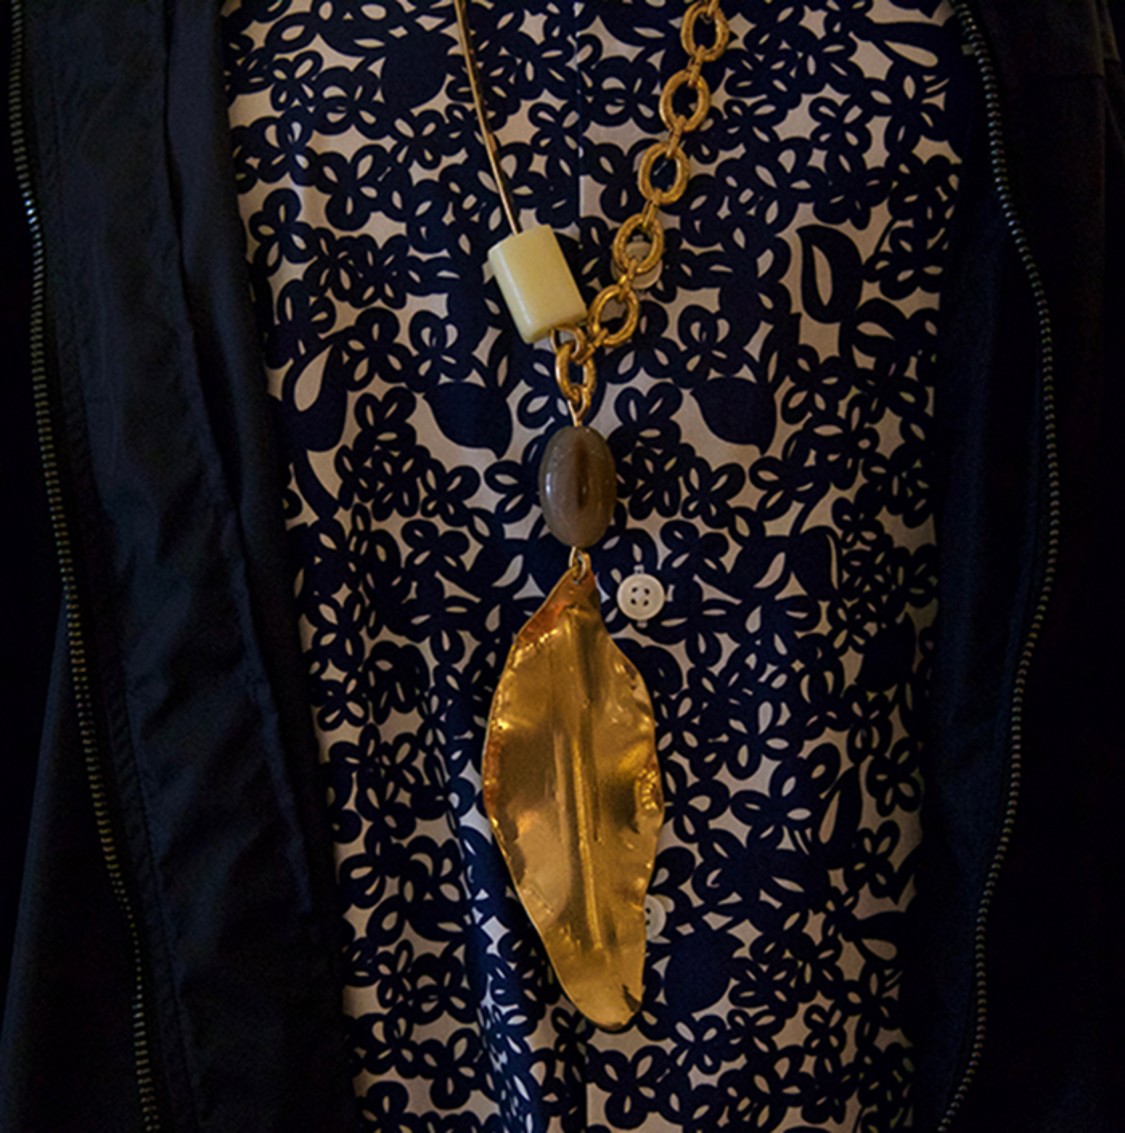 shop Marni Sales Camicie: Camicia Marni, in cotone, stampa a fiori blu, maniche lunghe, fit maschile, collare classico.

Composizione: 100% cotone. number 1392